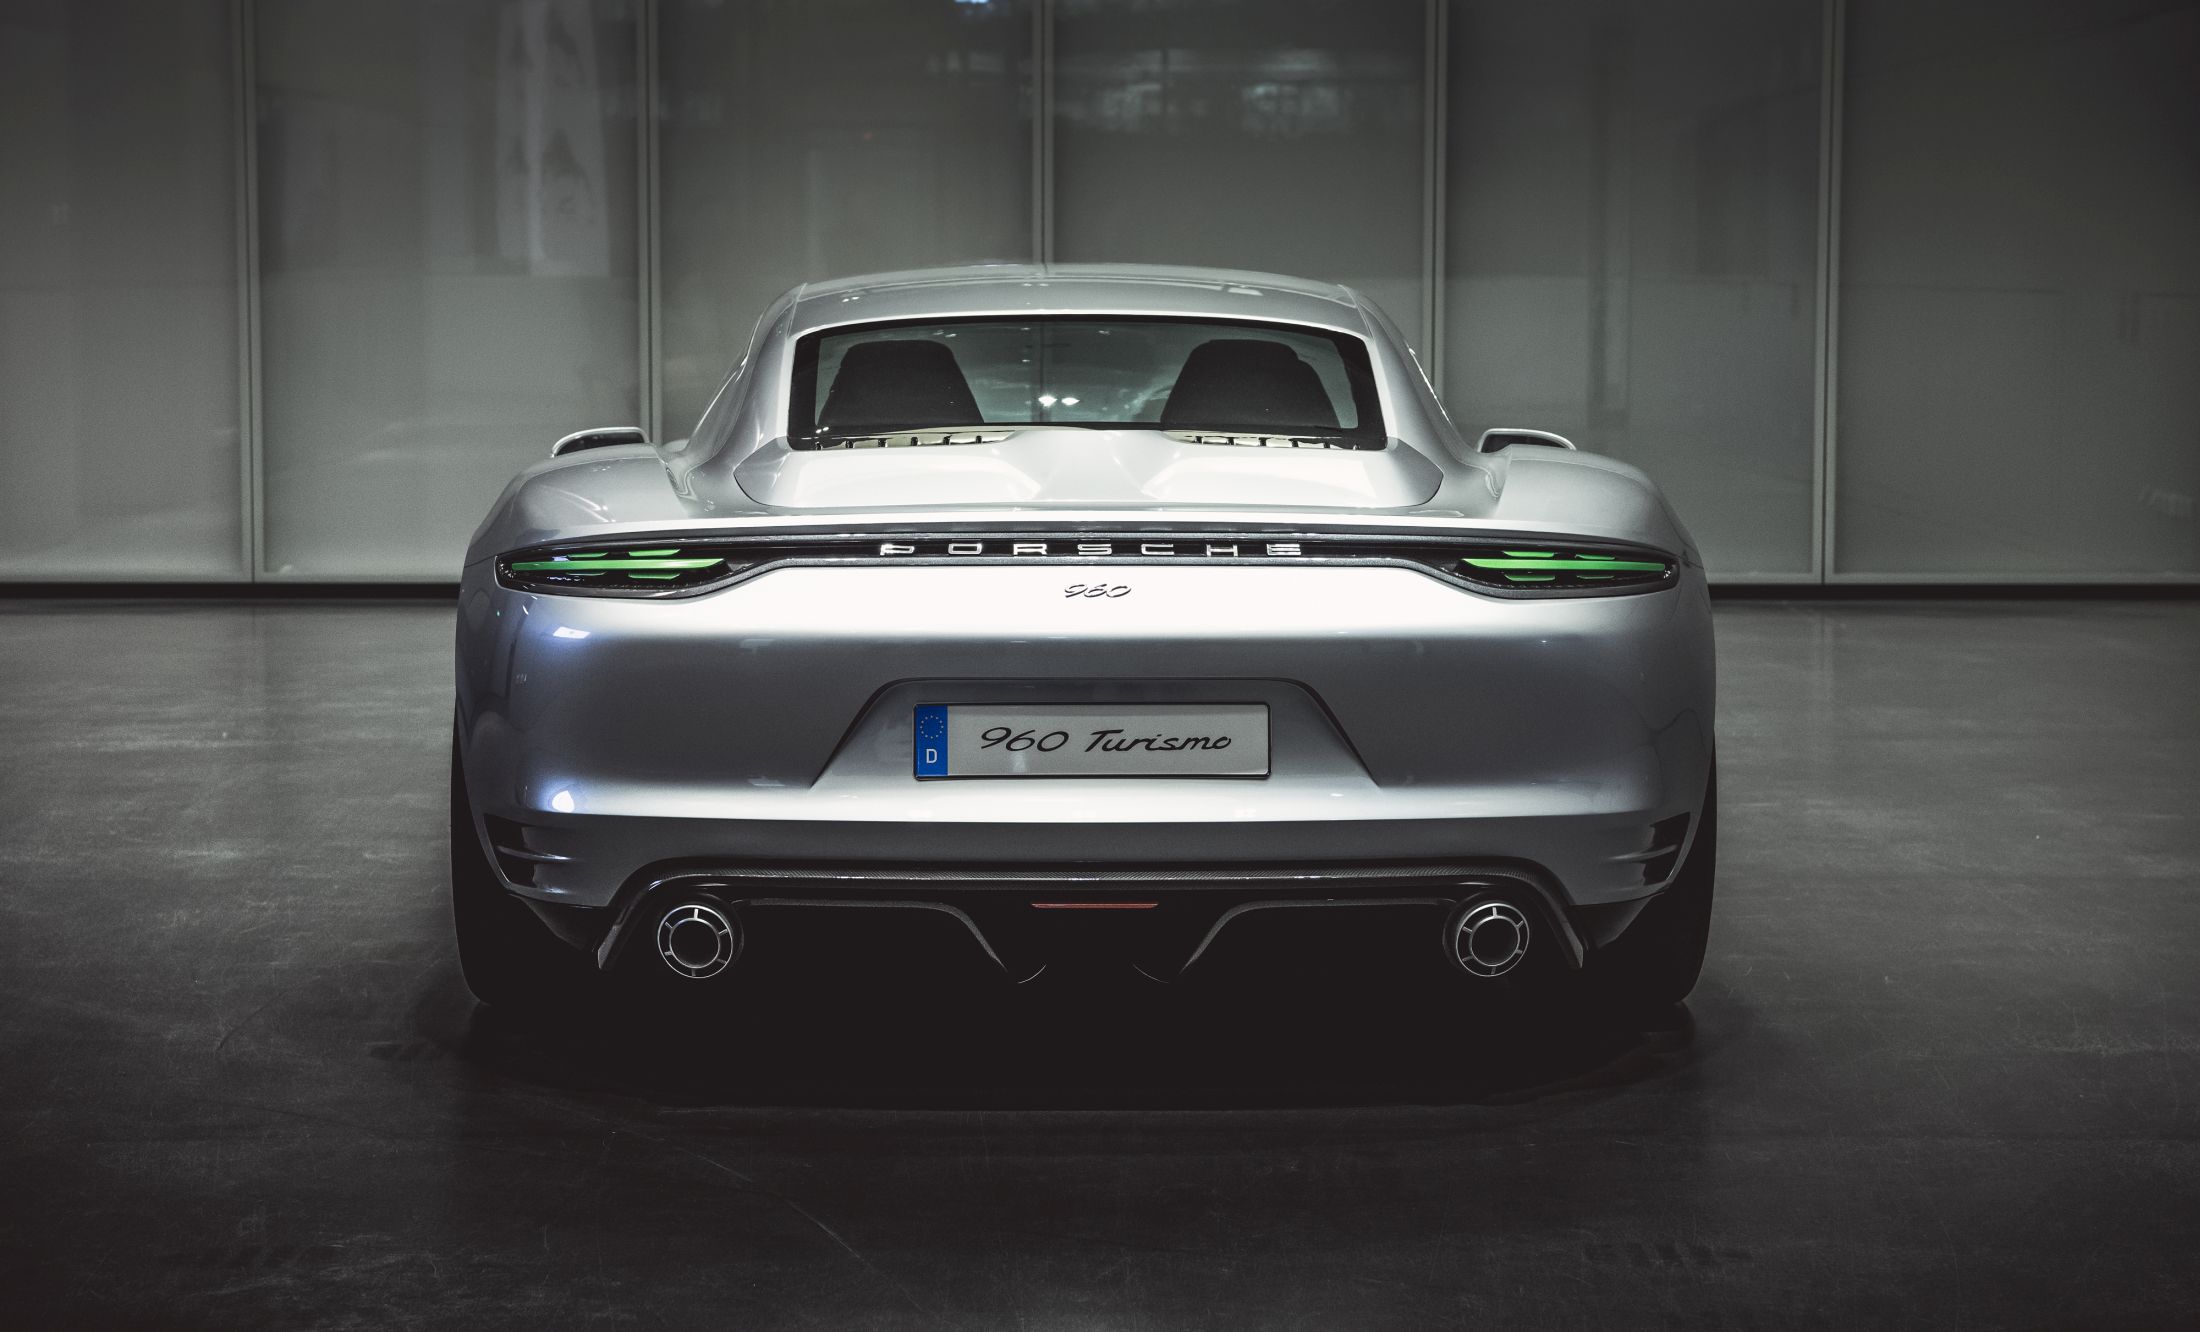 Porsche Vision Turismo COncept (5)